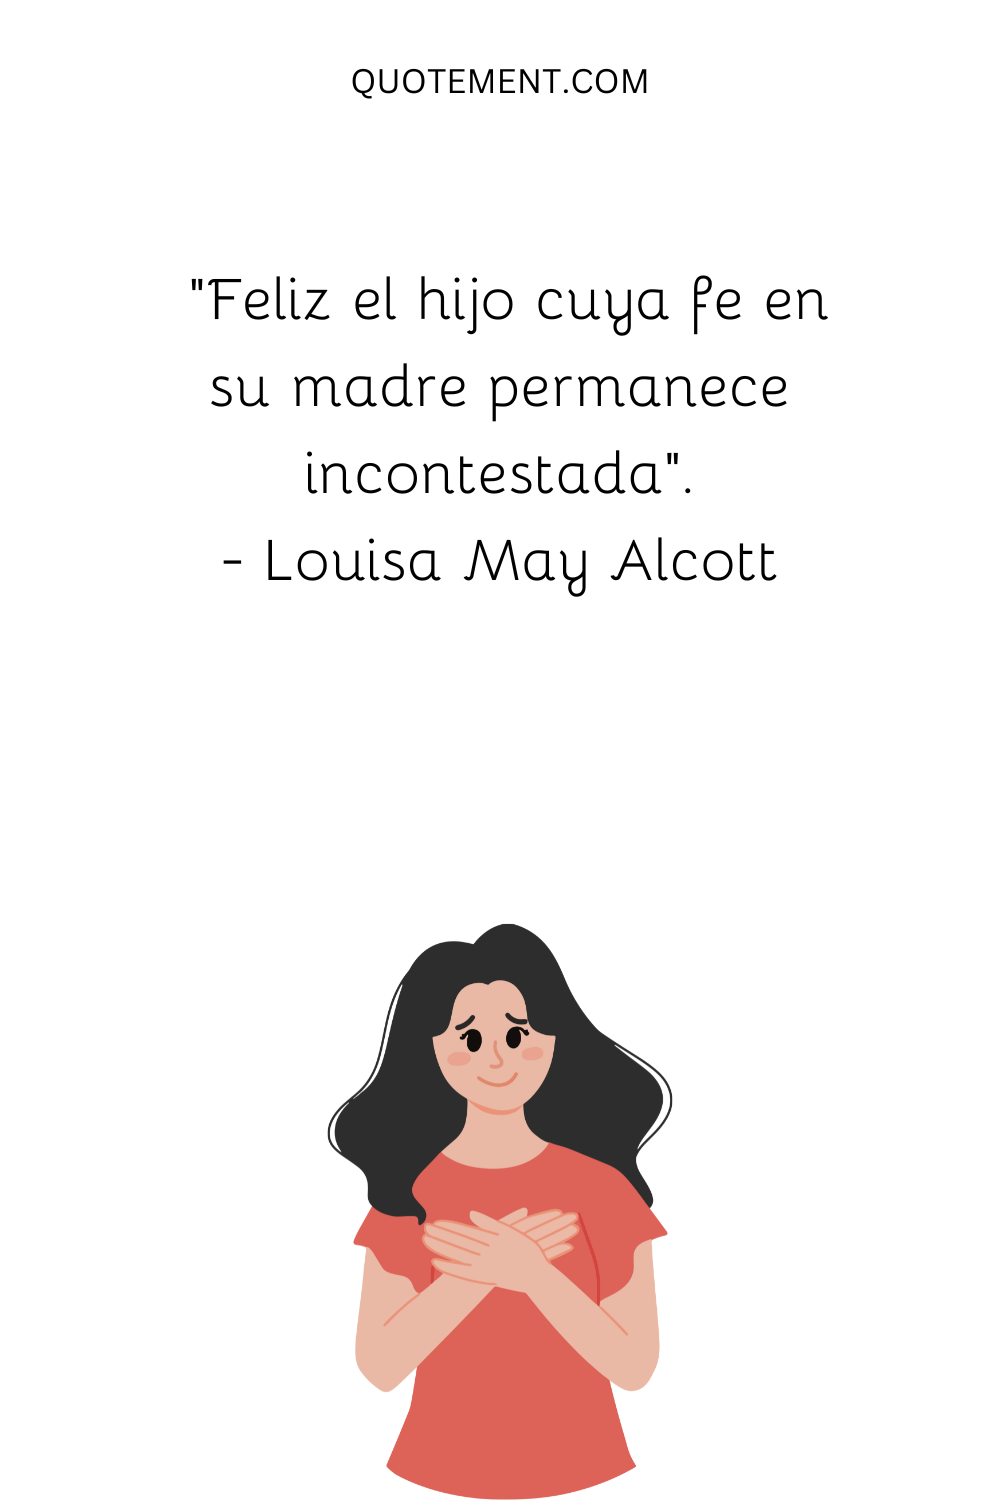 "Feliz es el hijo cuya fe en su madre permanece incontestada". - Louisa May Alcott